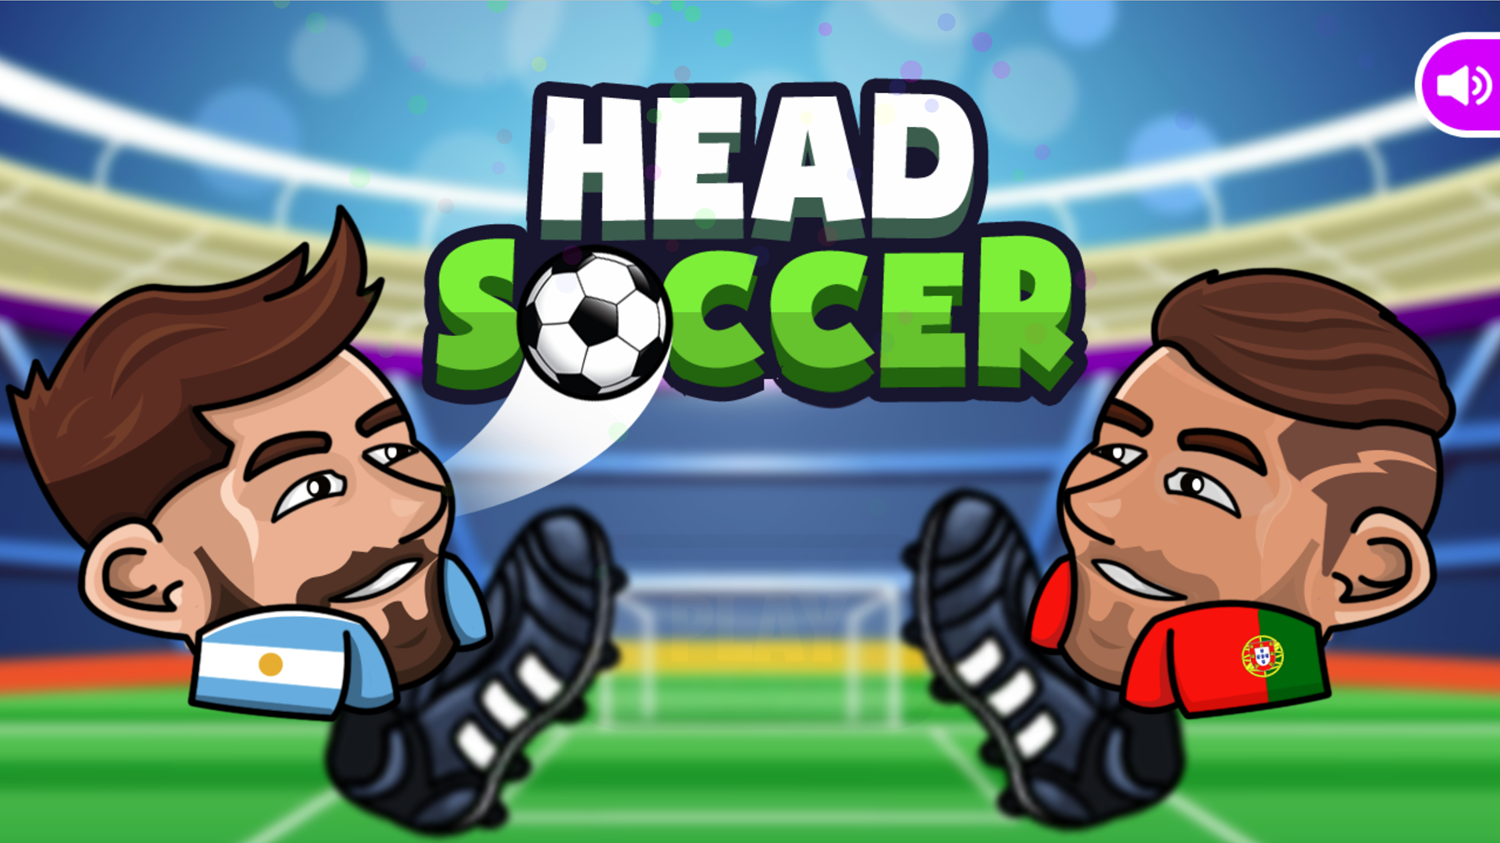 Head Soccer Game Welcome Screen Screenshot.